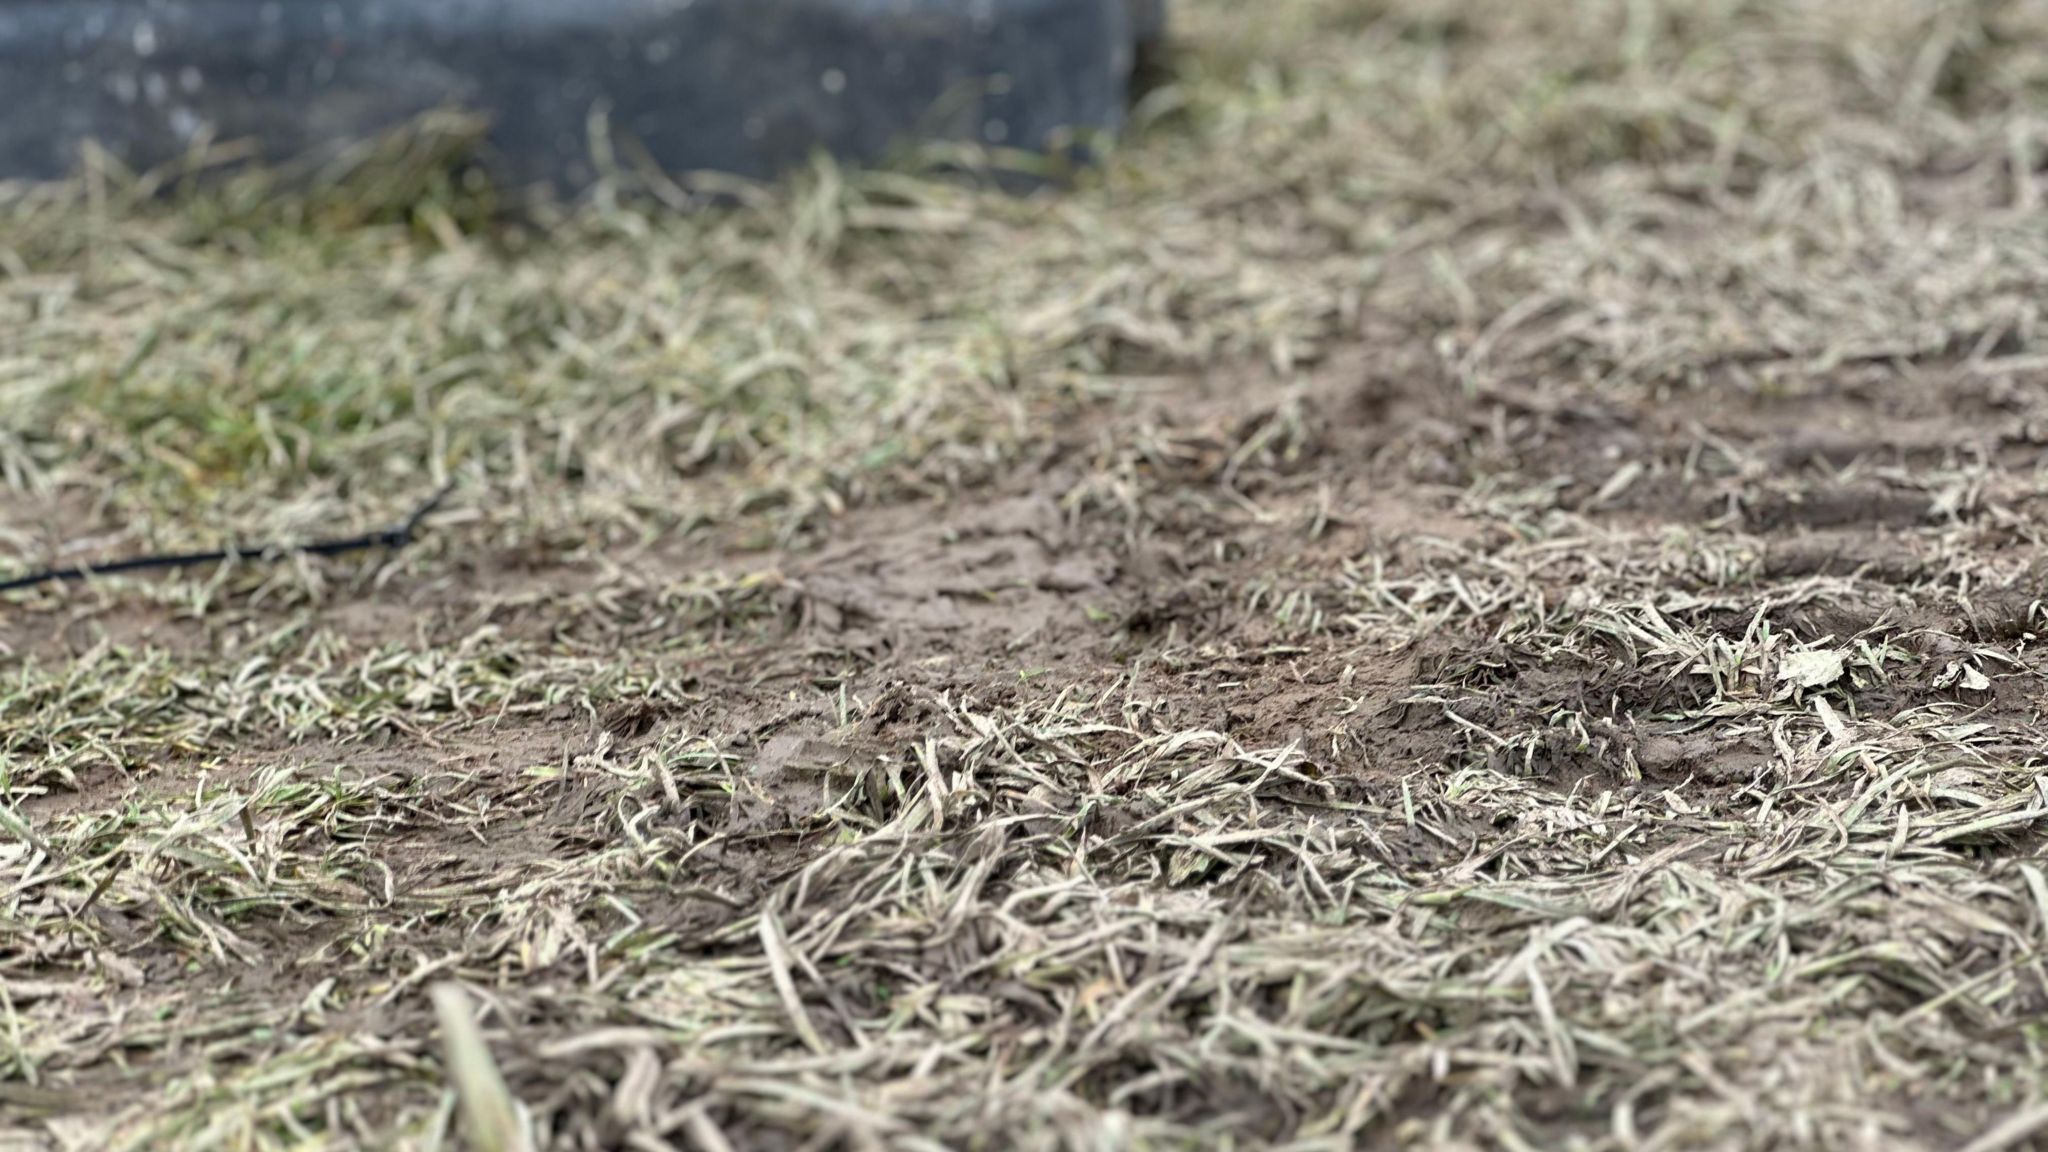 Muddy tracks on grass